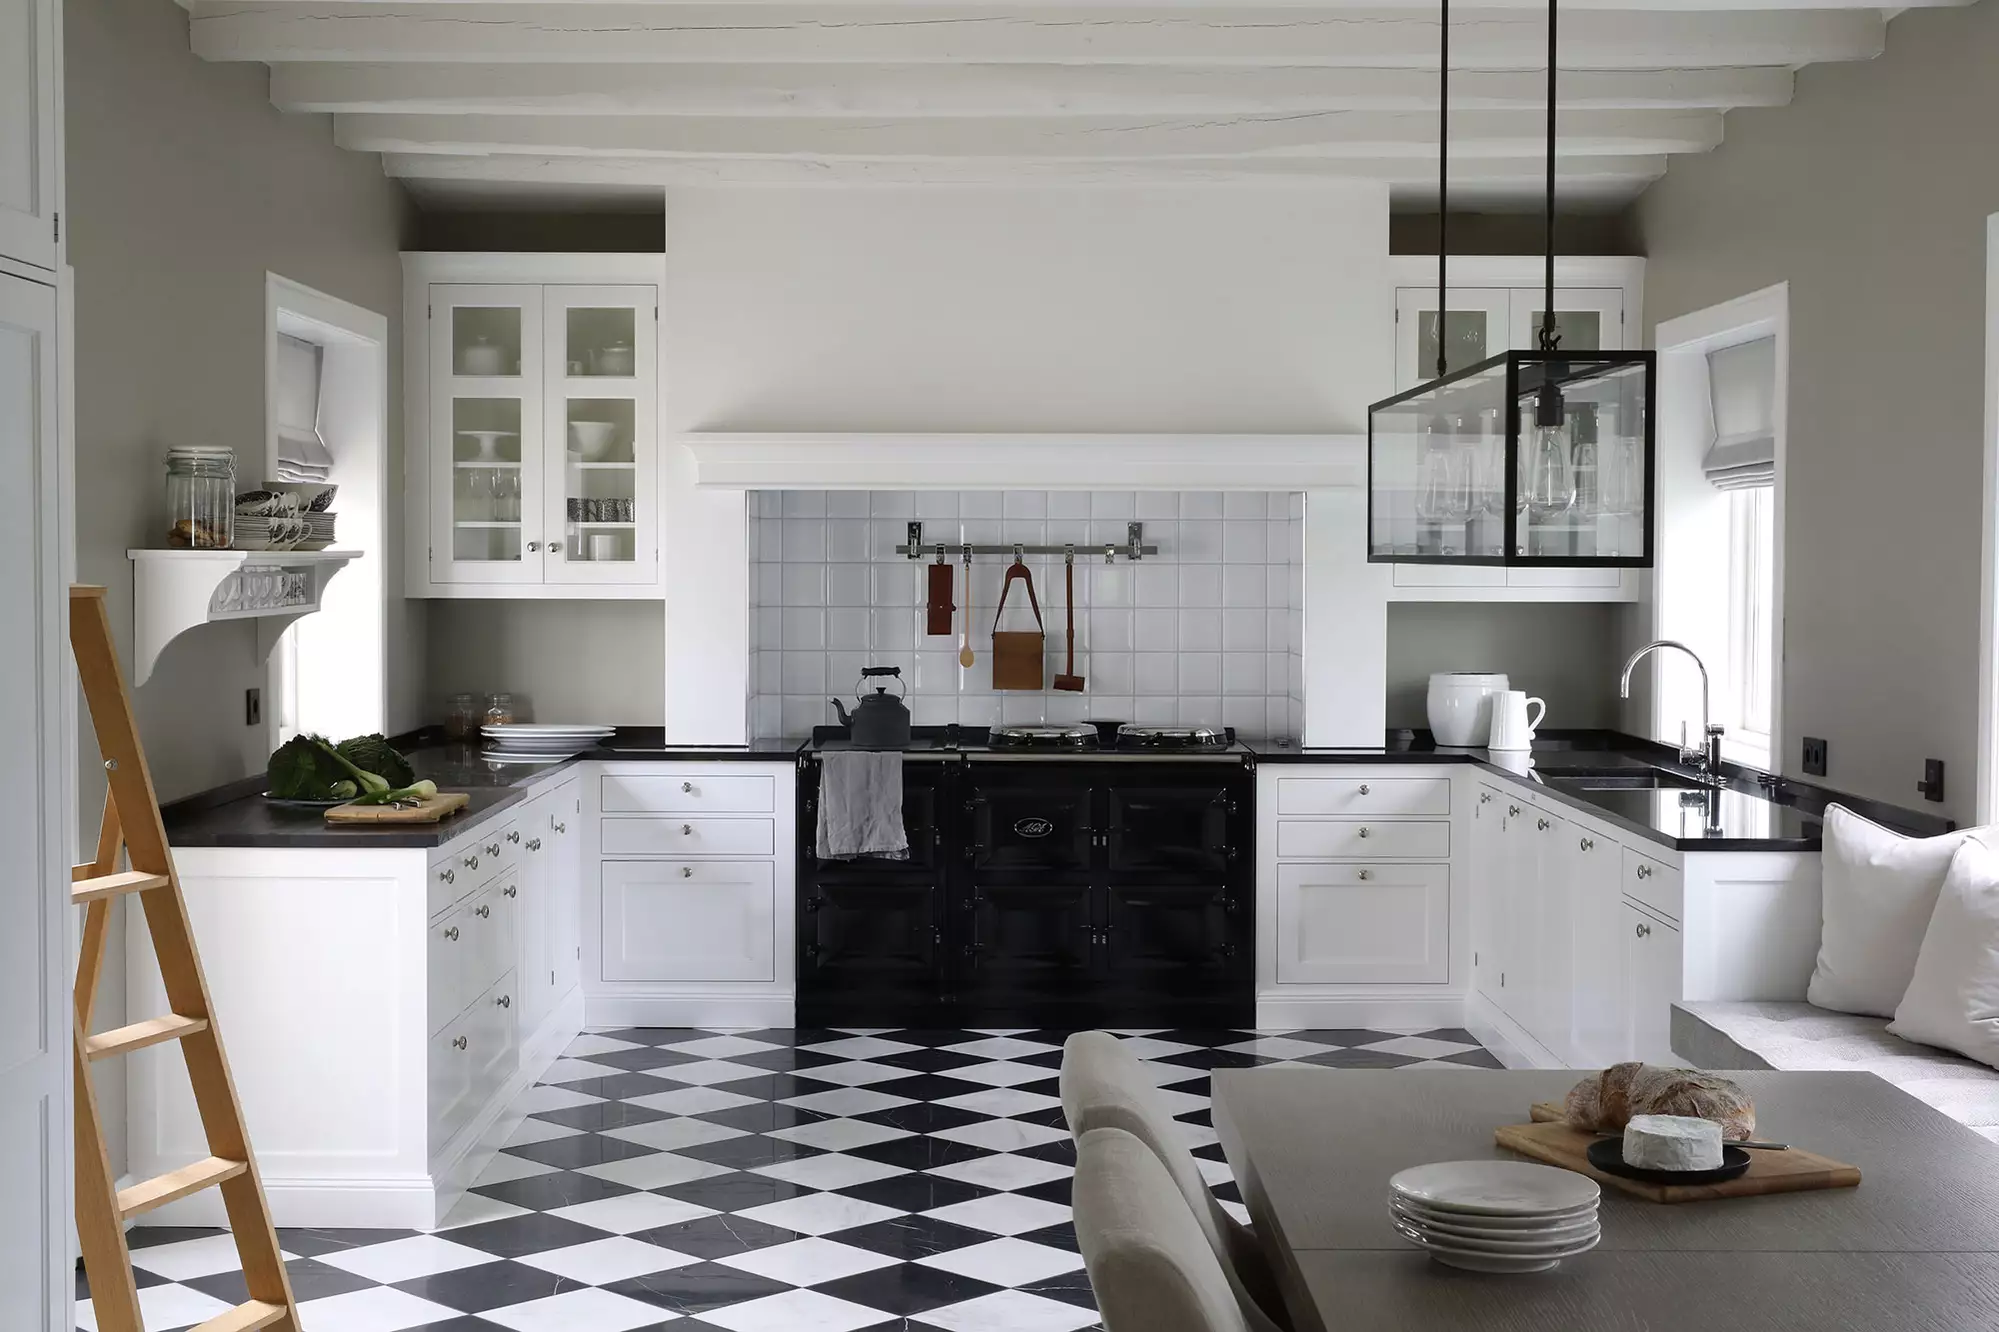 Black & white kitchen  Checkered kitchen decor, Black kitchen decor, Kitchen  decor apartment